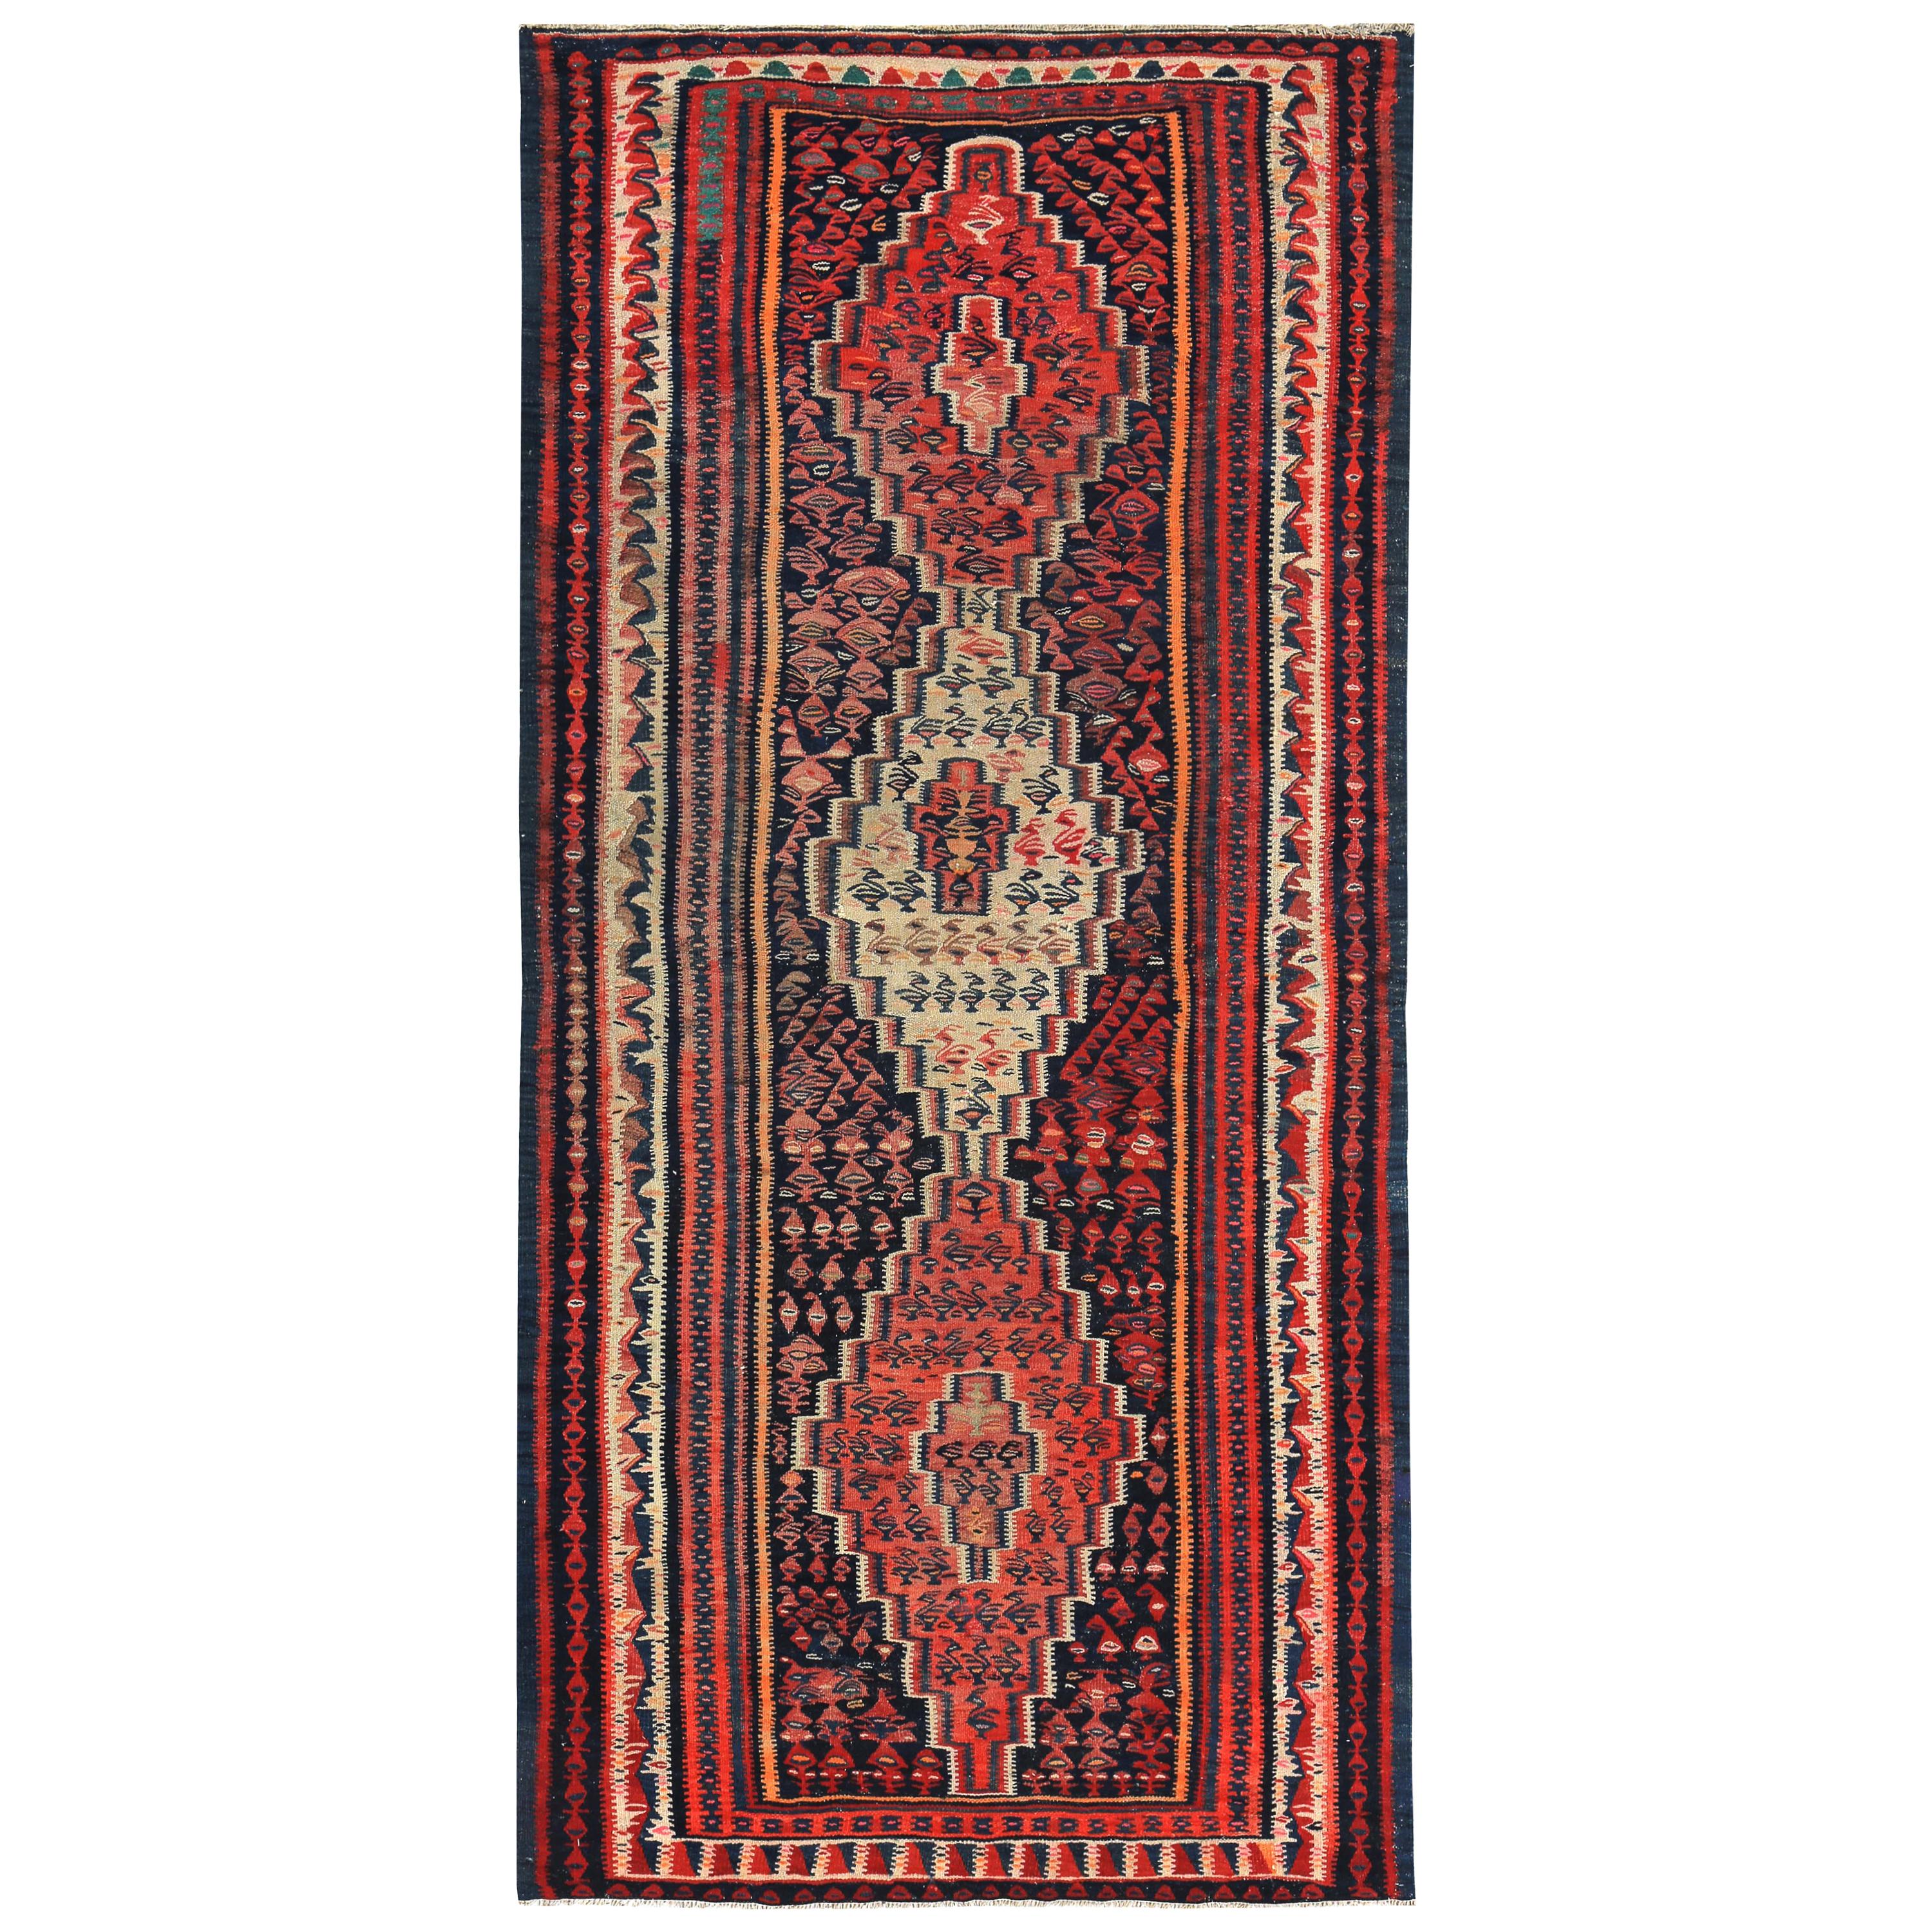 Moderner türkischer Kelim-Teppich mit roten, blauen und orangefarbenen Stammesstreifen